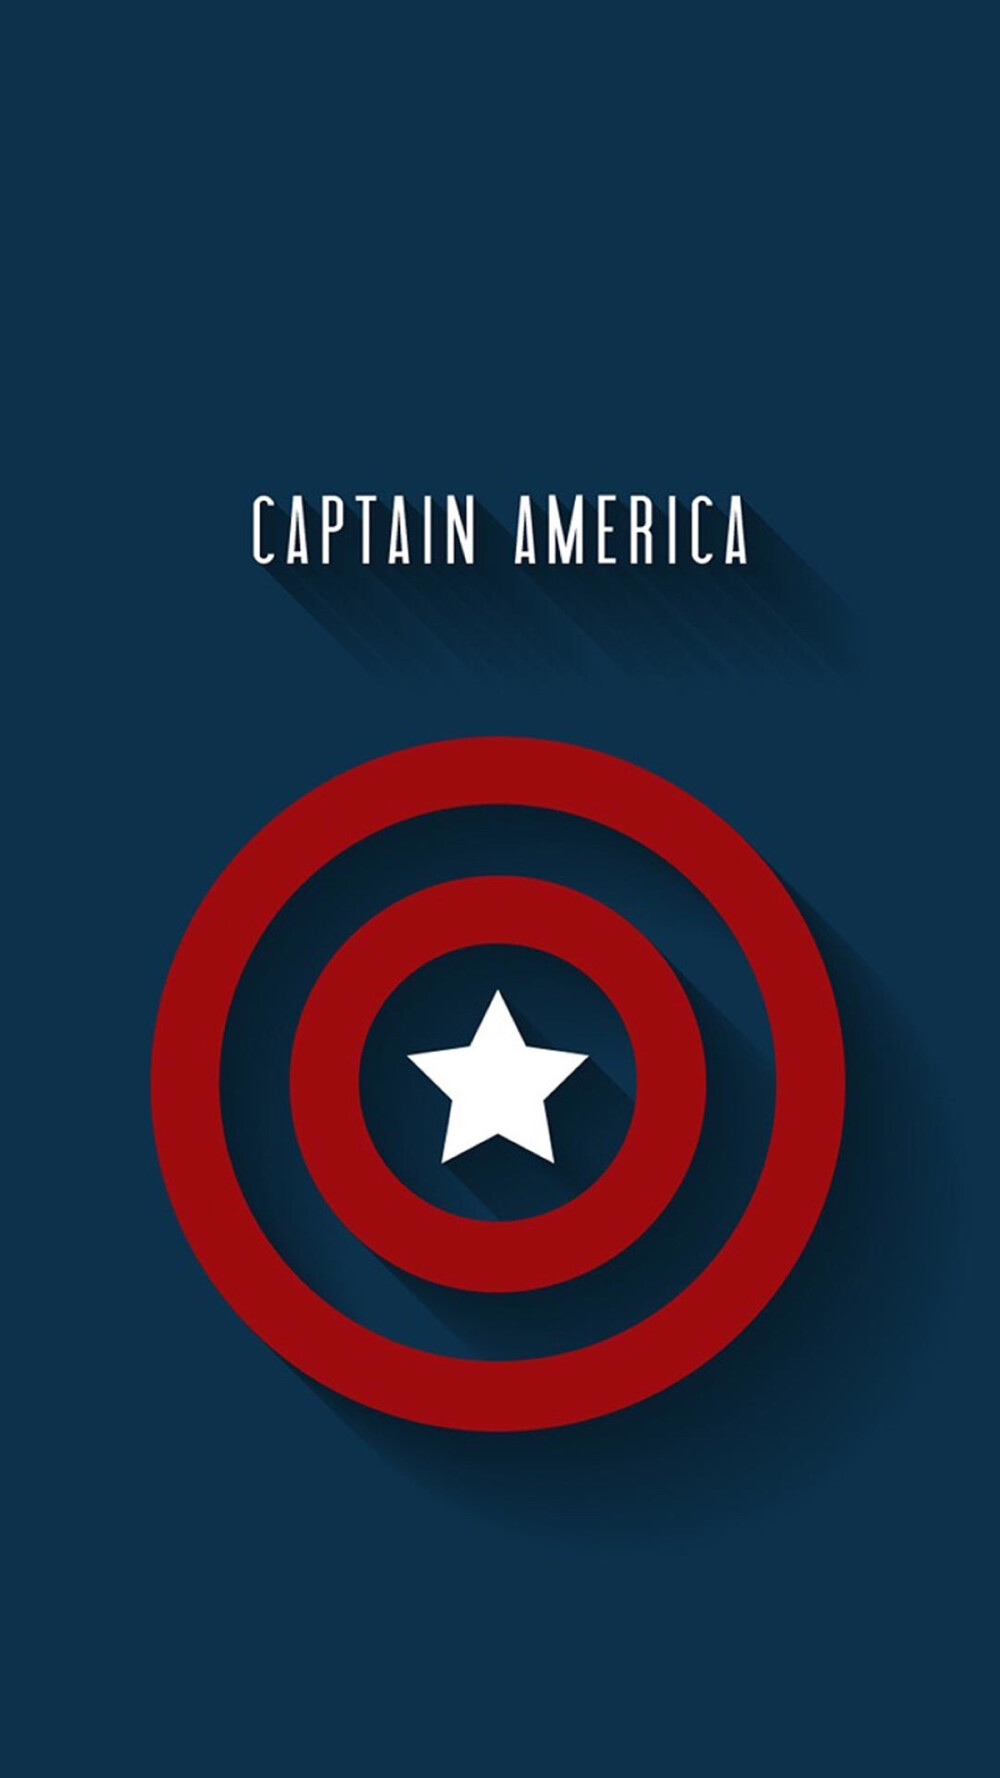 美国队长logo壁纸图片